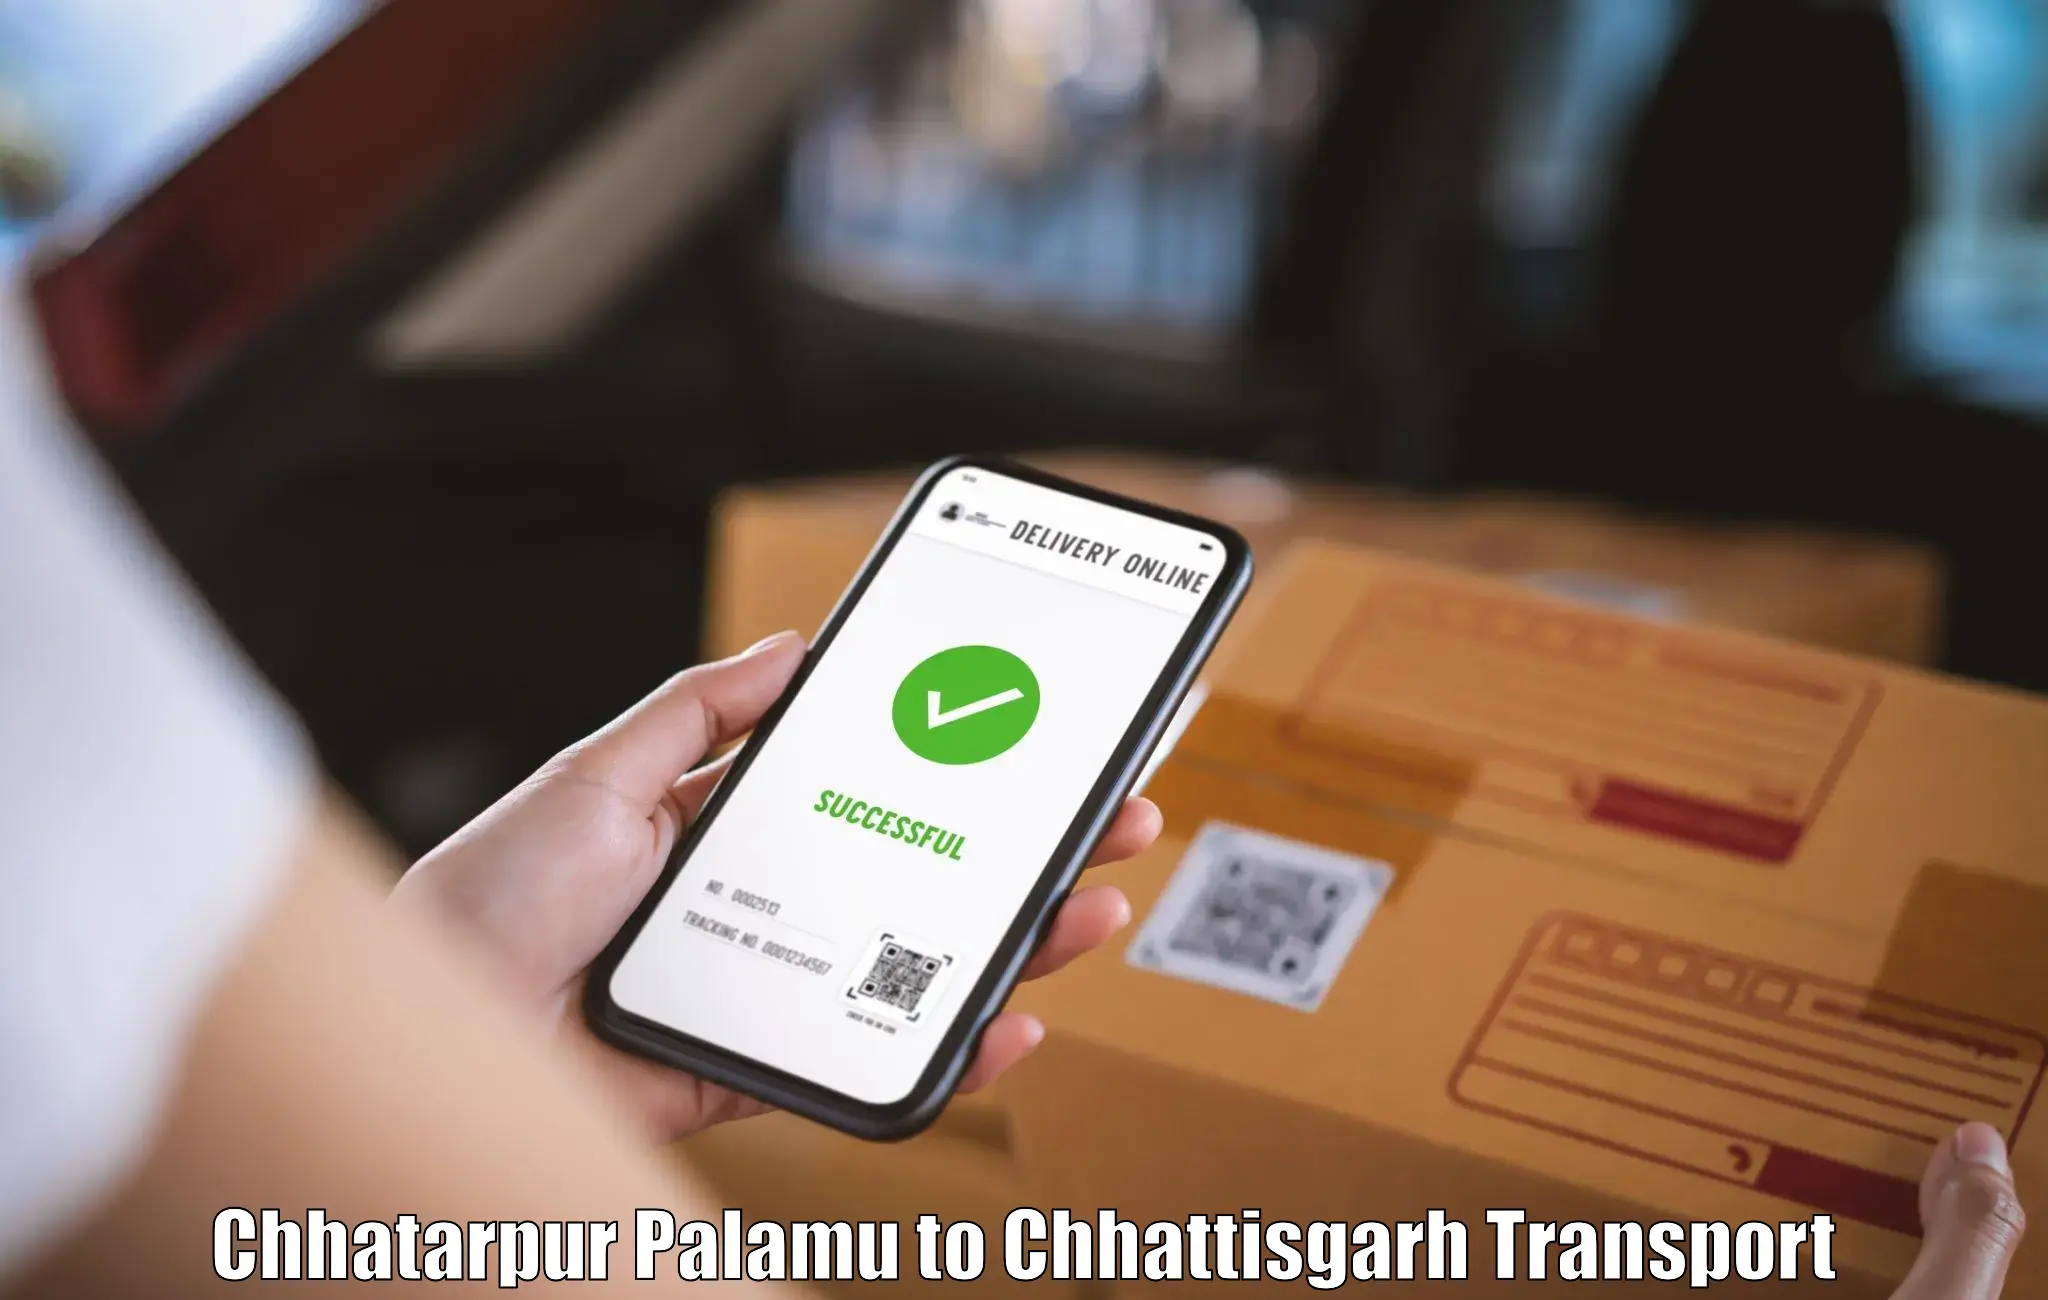 Furniture transport service Chhatarpur Palamu to Jagdalpur